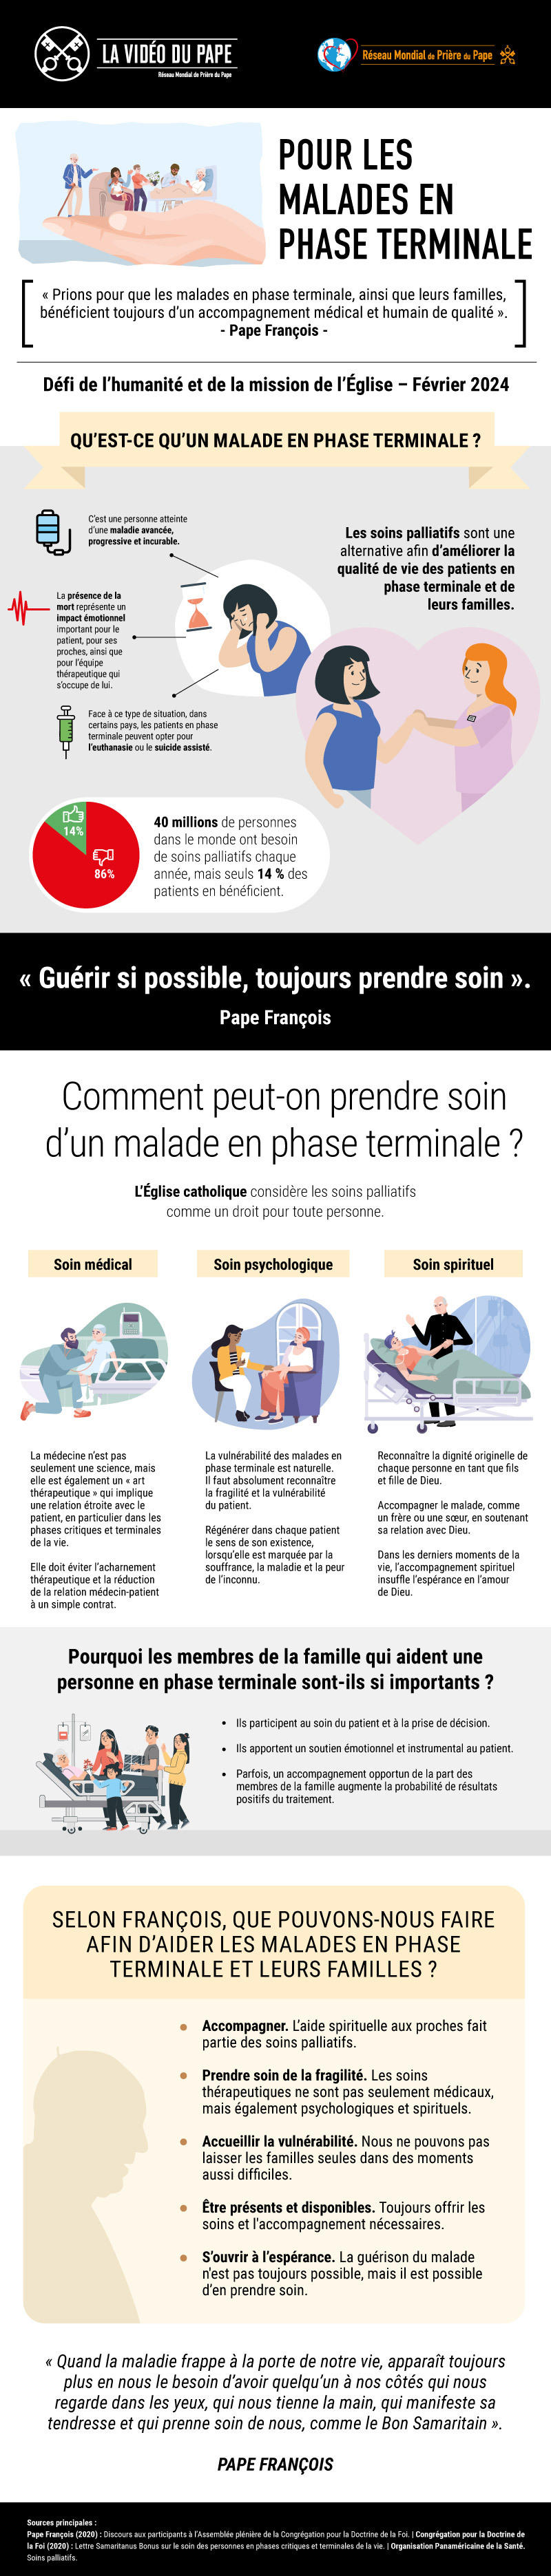 Infographic_-_TPV_2_2024_FR_-_Pour_les_malades_en_phase_terminale.jpg